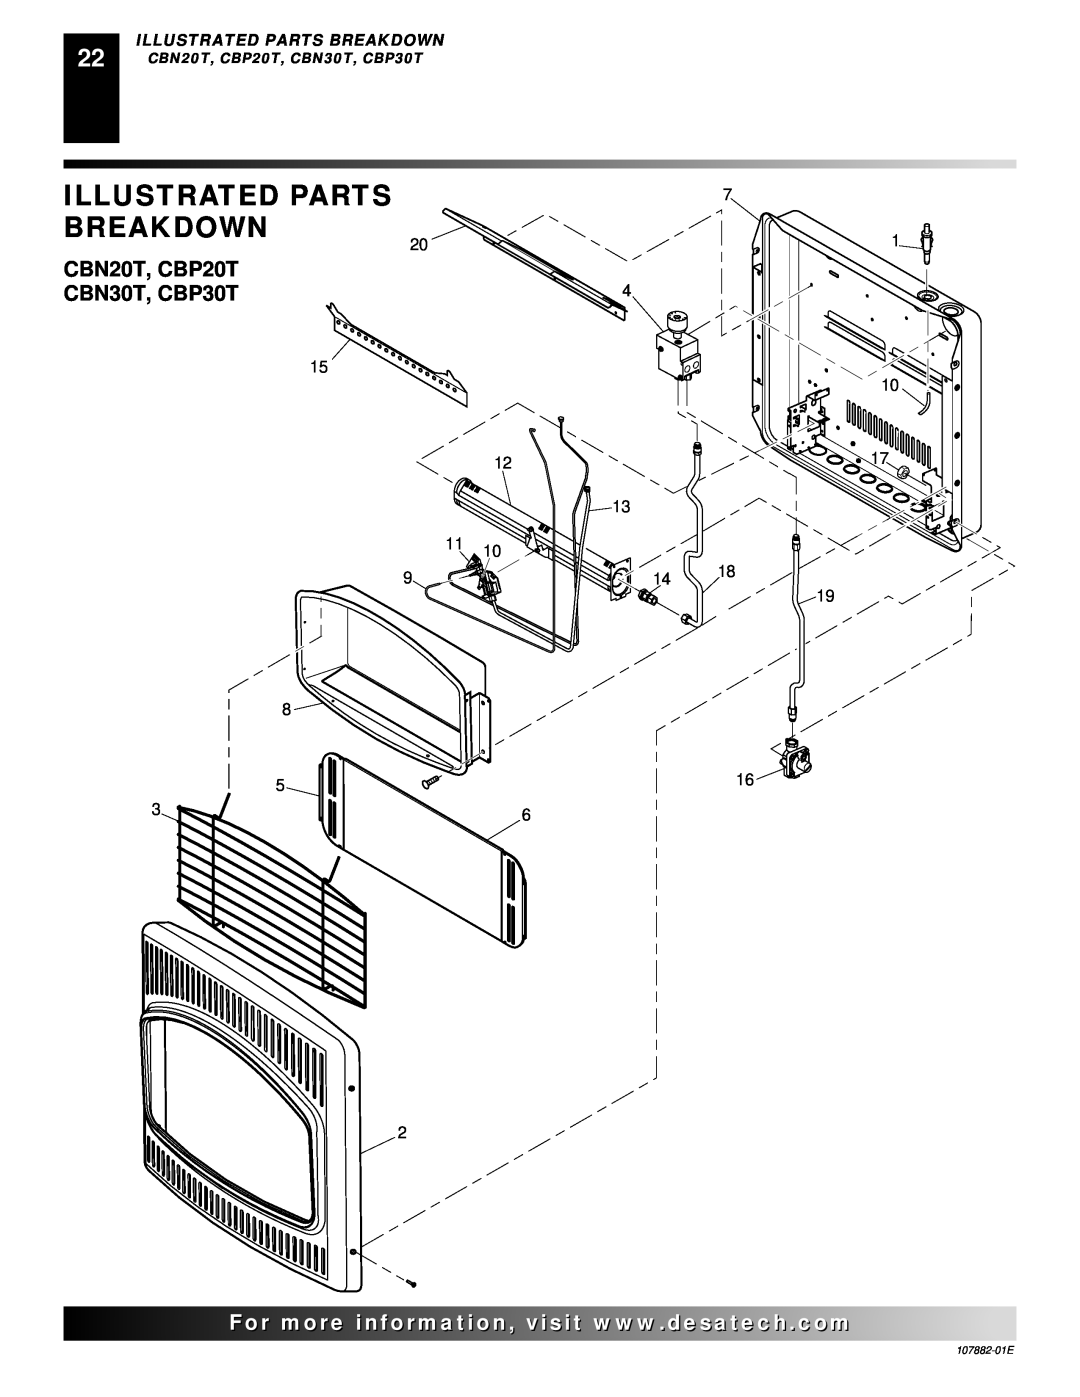 Desa Tech installation manual Illustrated Parts Breakdown, For..com, CBN20T, CBP20T, CBN30T, CBP30T, 107882-01E 